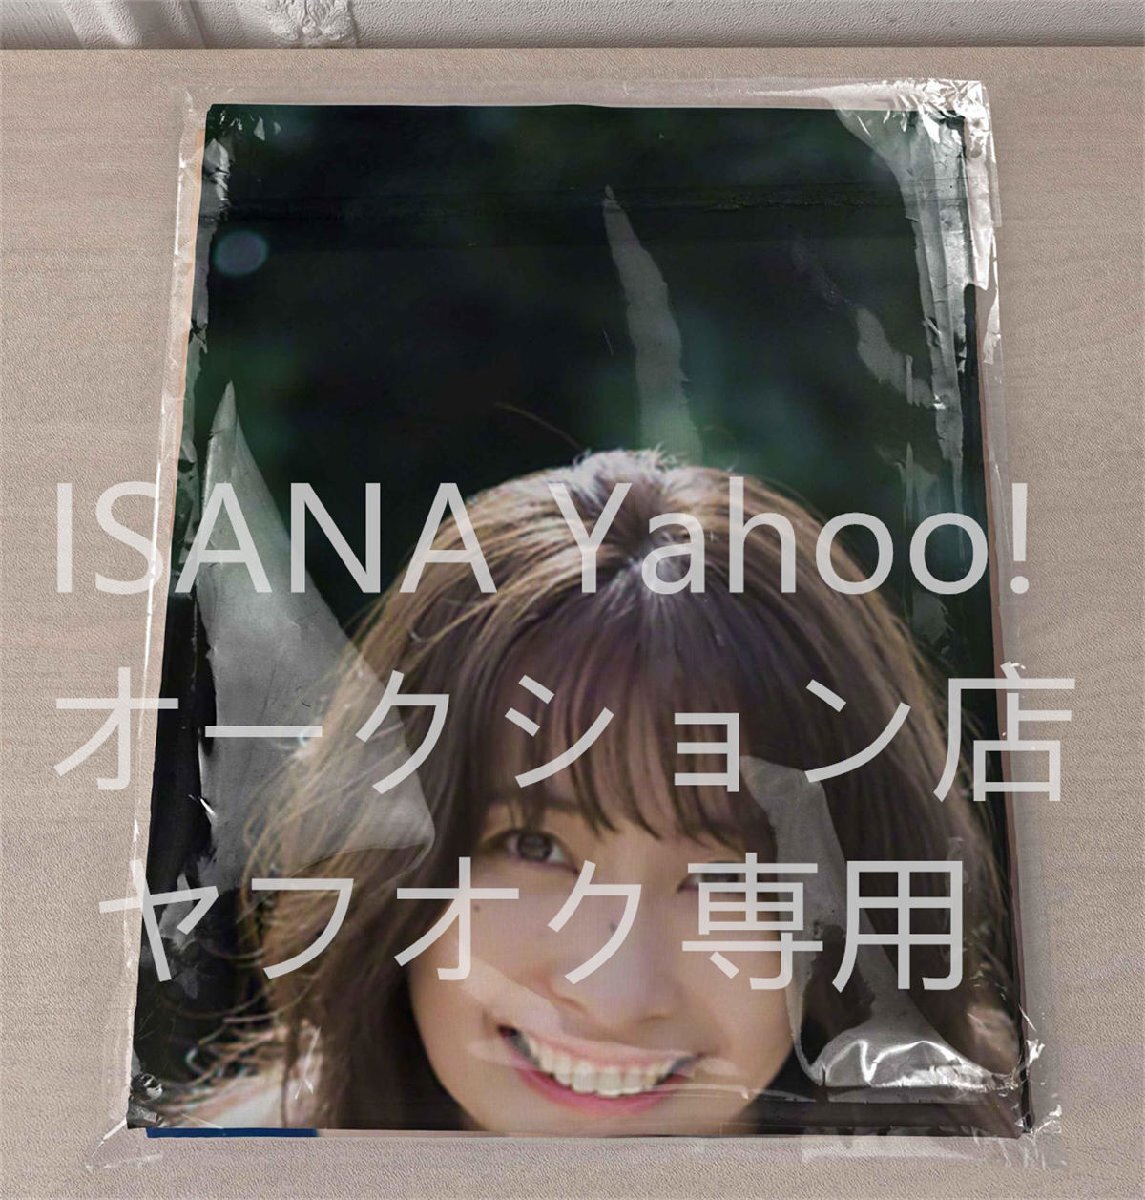 1 иен старт / Yamazaki подлинный реальный /160cm×50cm/2way tricot / Dakimakura покрытие 